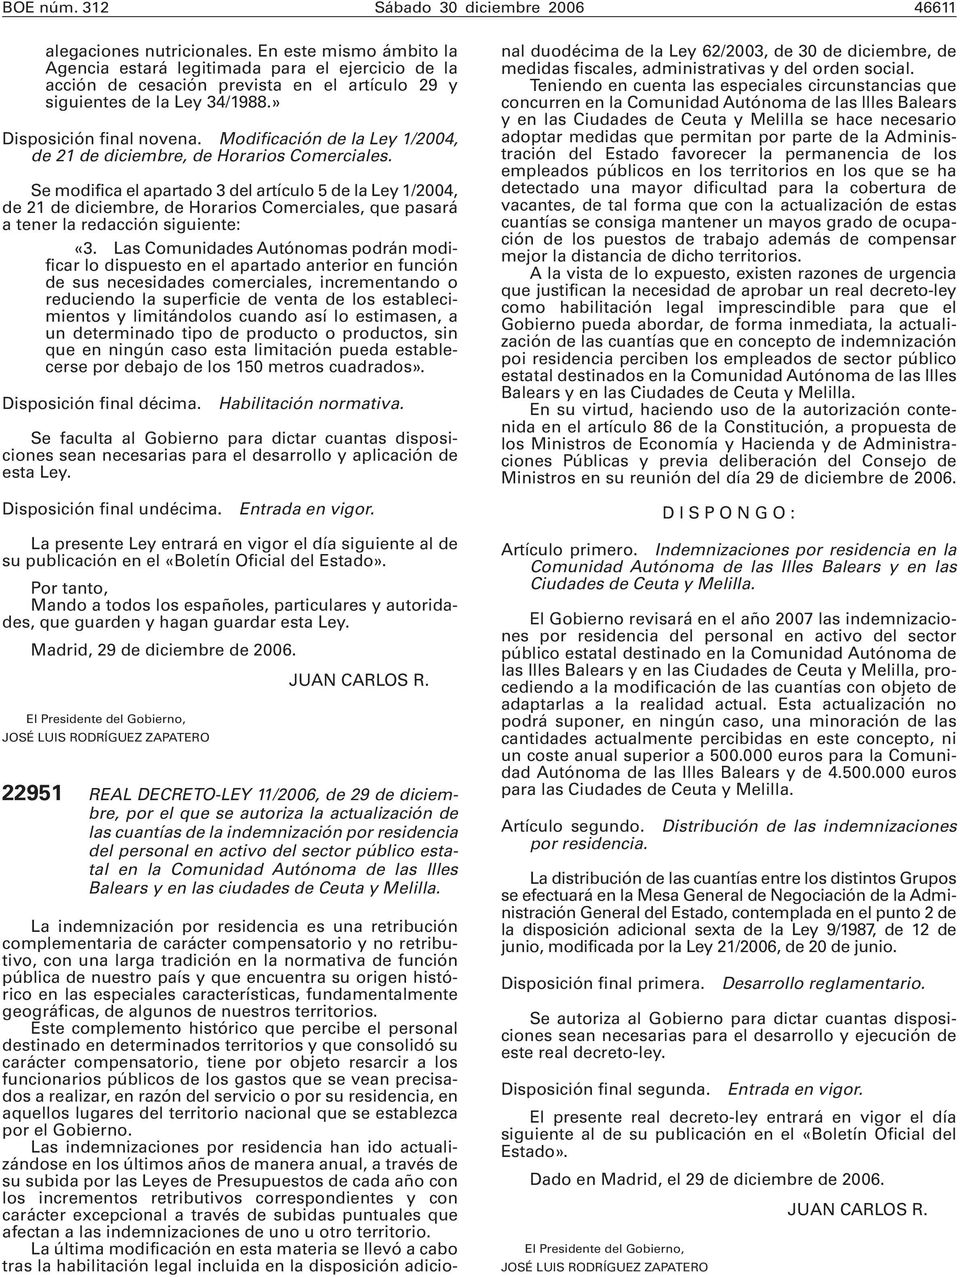 Modificación de la Ley 1/2004, de 21 de diciembre, de Horarios Comerciales.